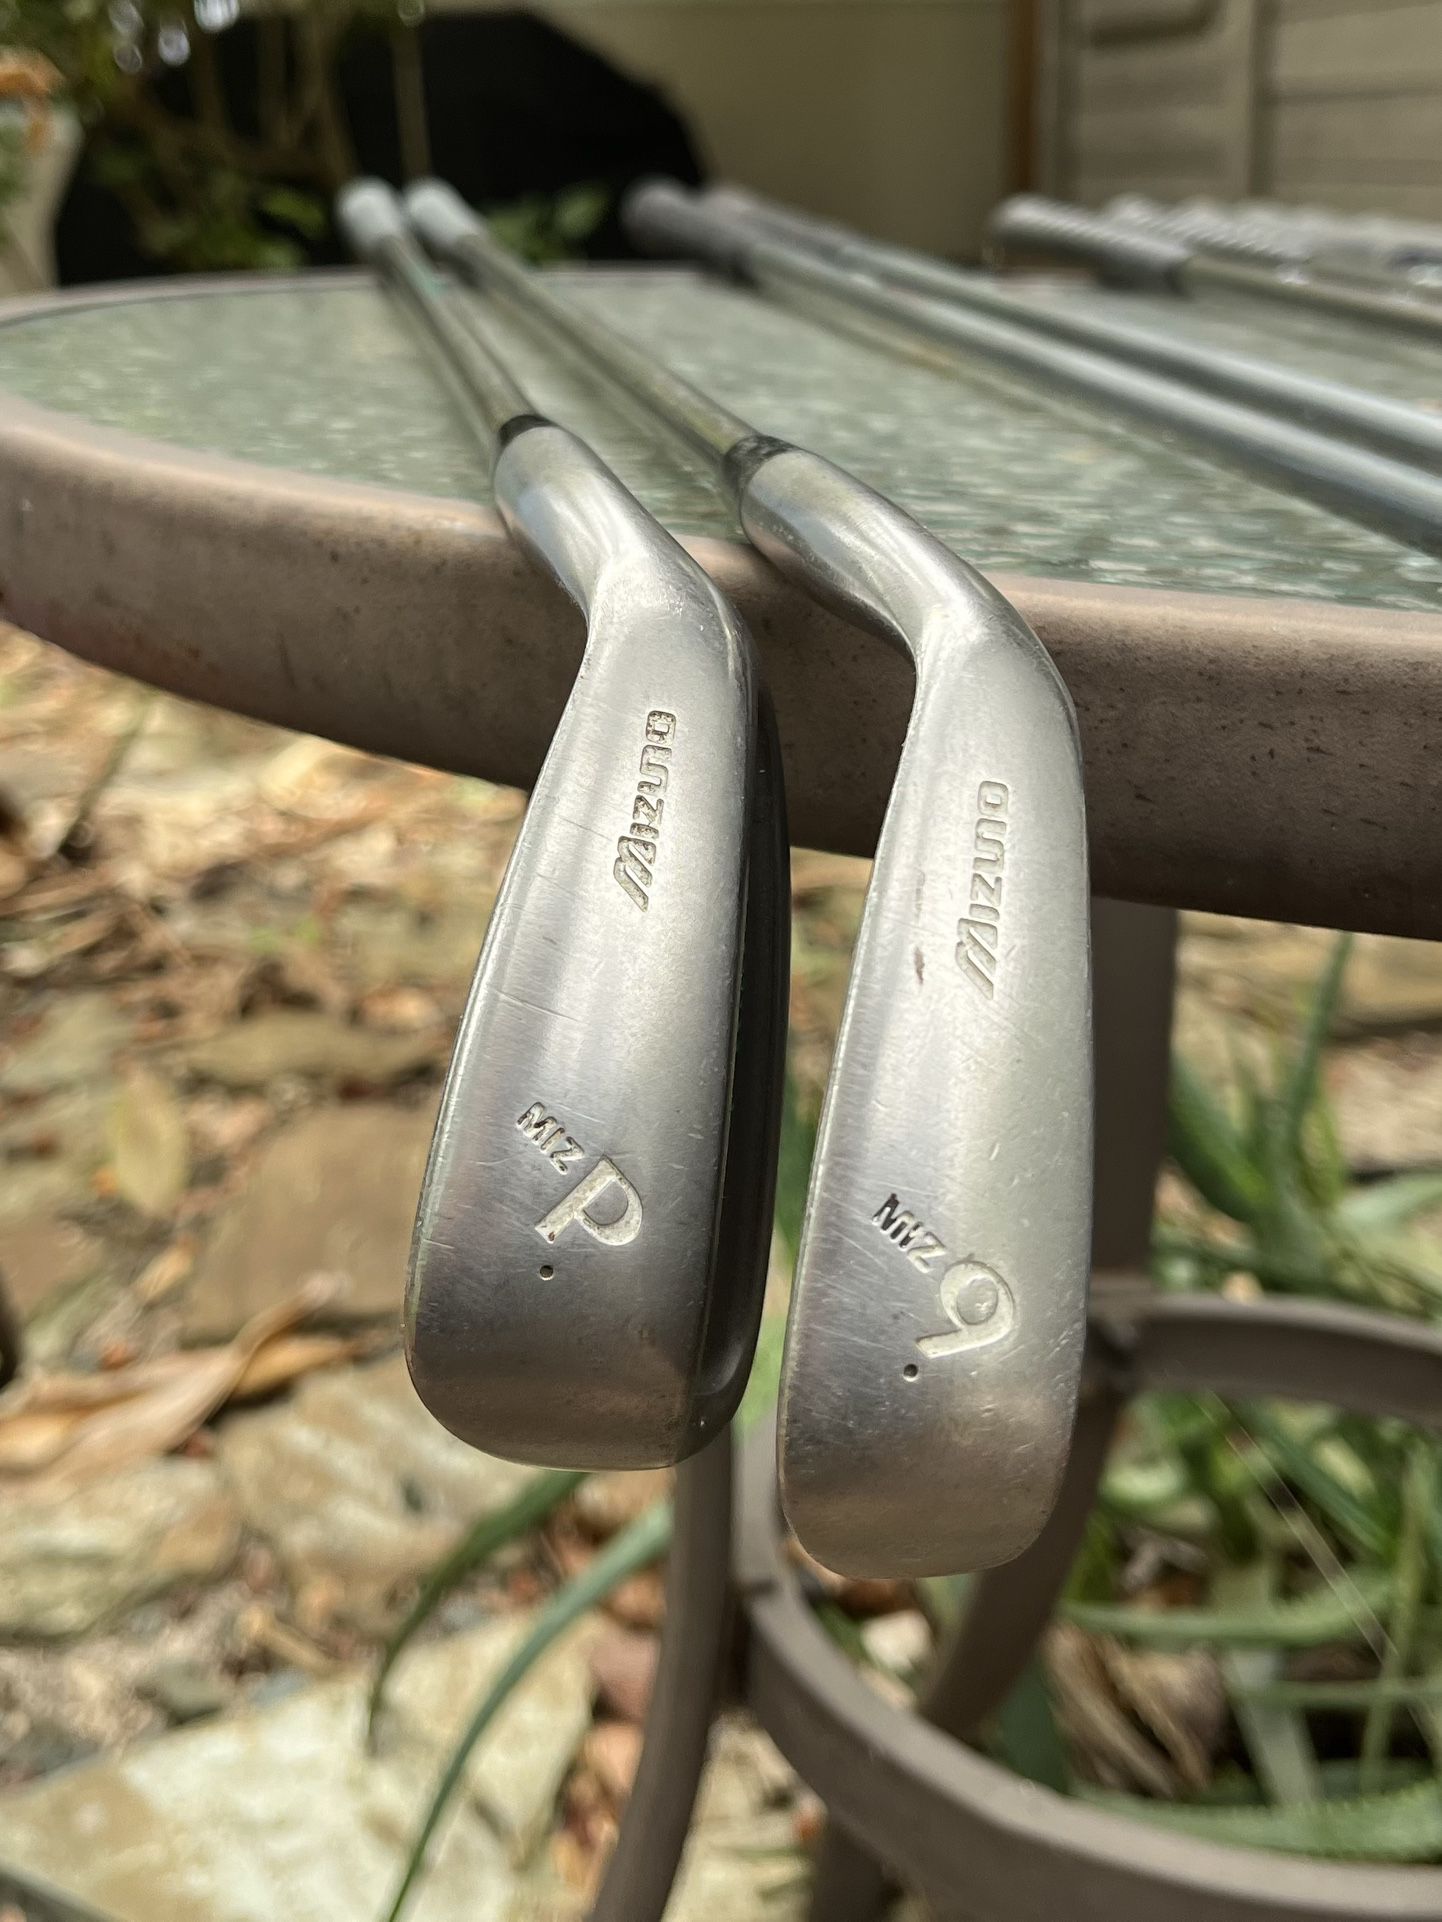 Golf Clubs - Irons (9 & P)